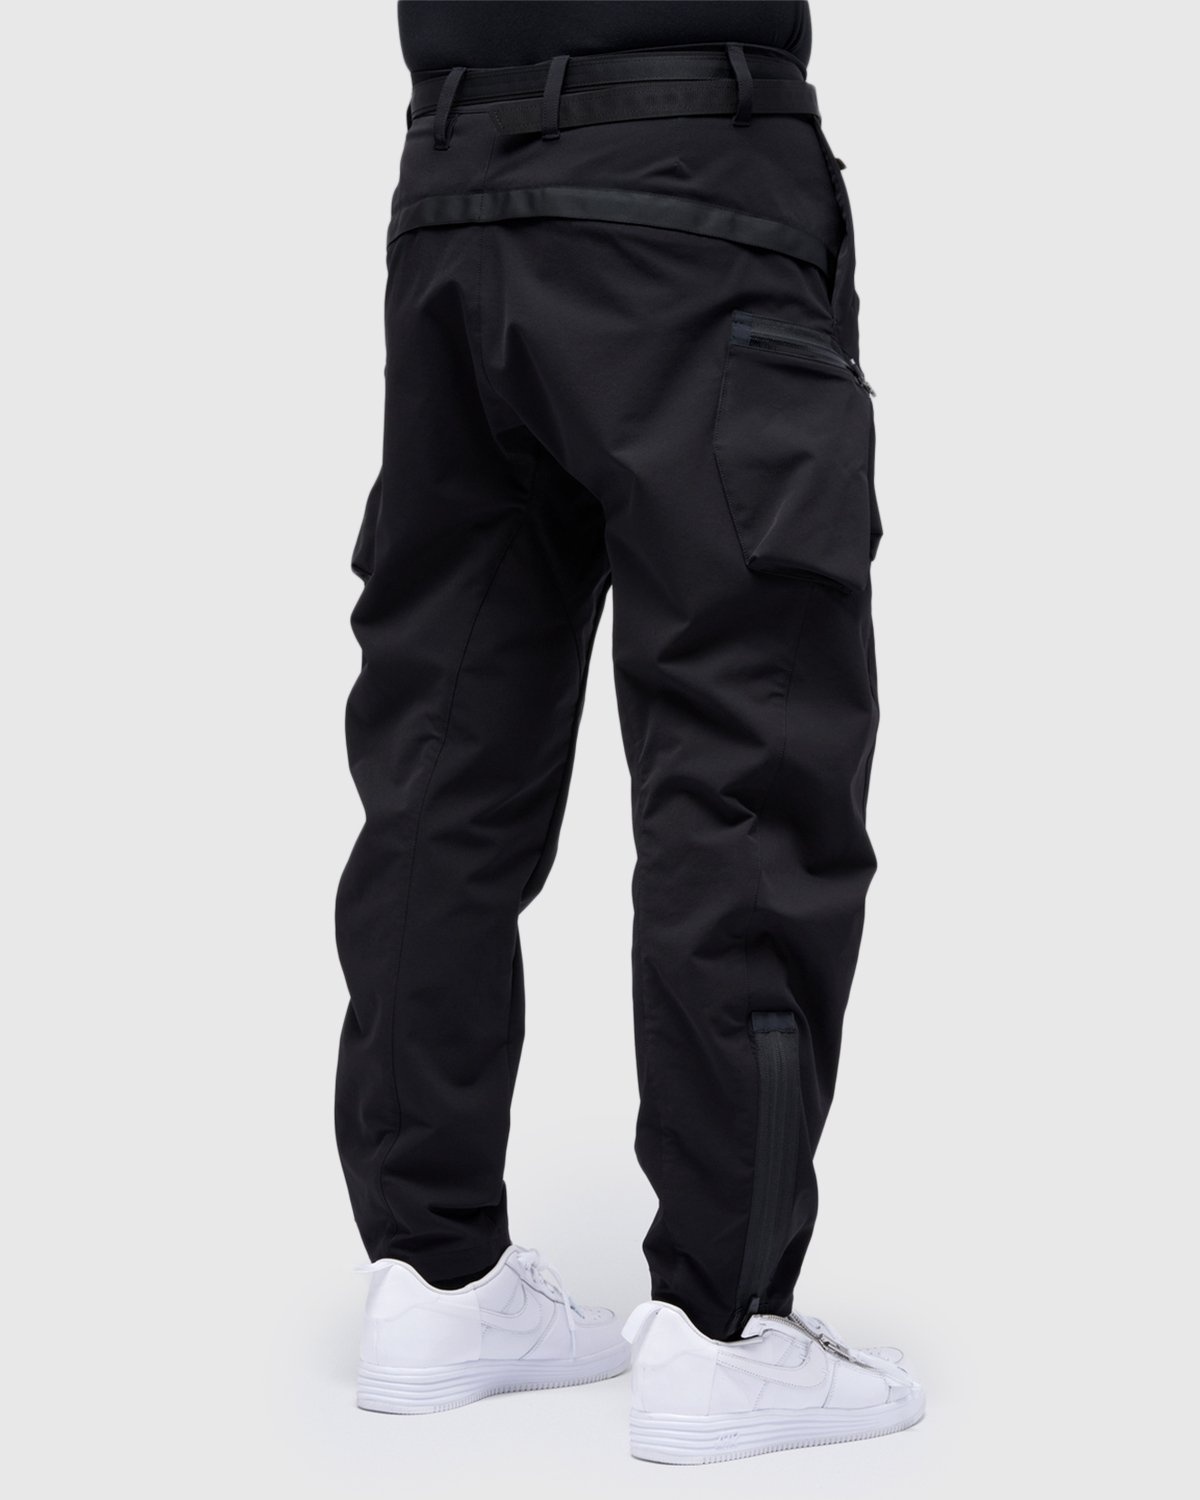 ACRONYM – P41-DS Pant Black - Pants - Black - Image 9